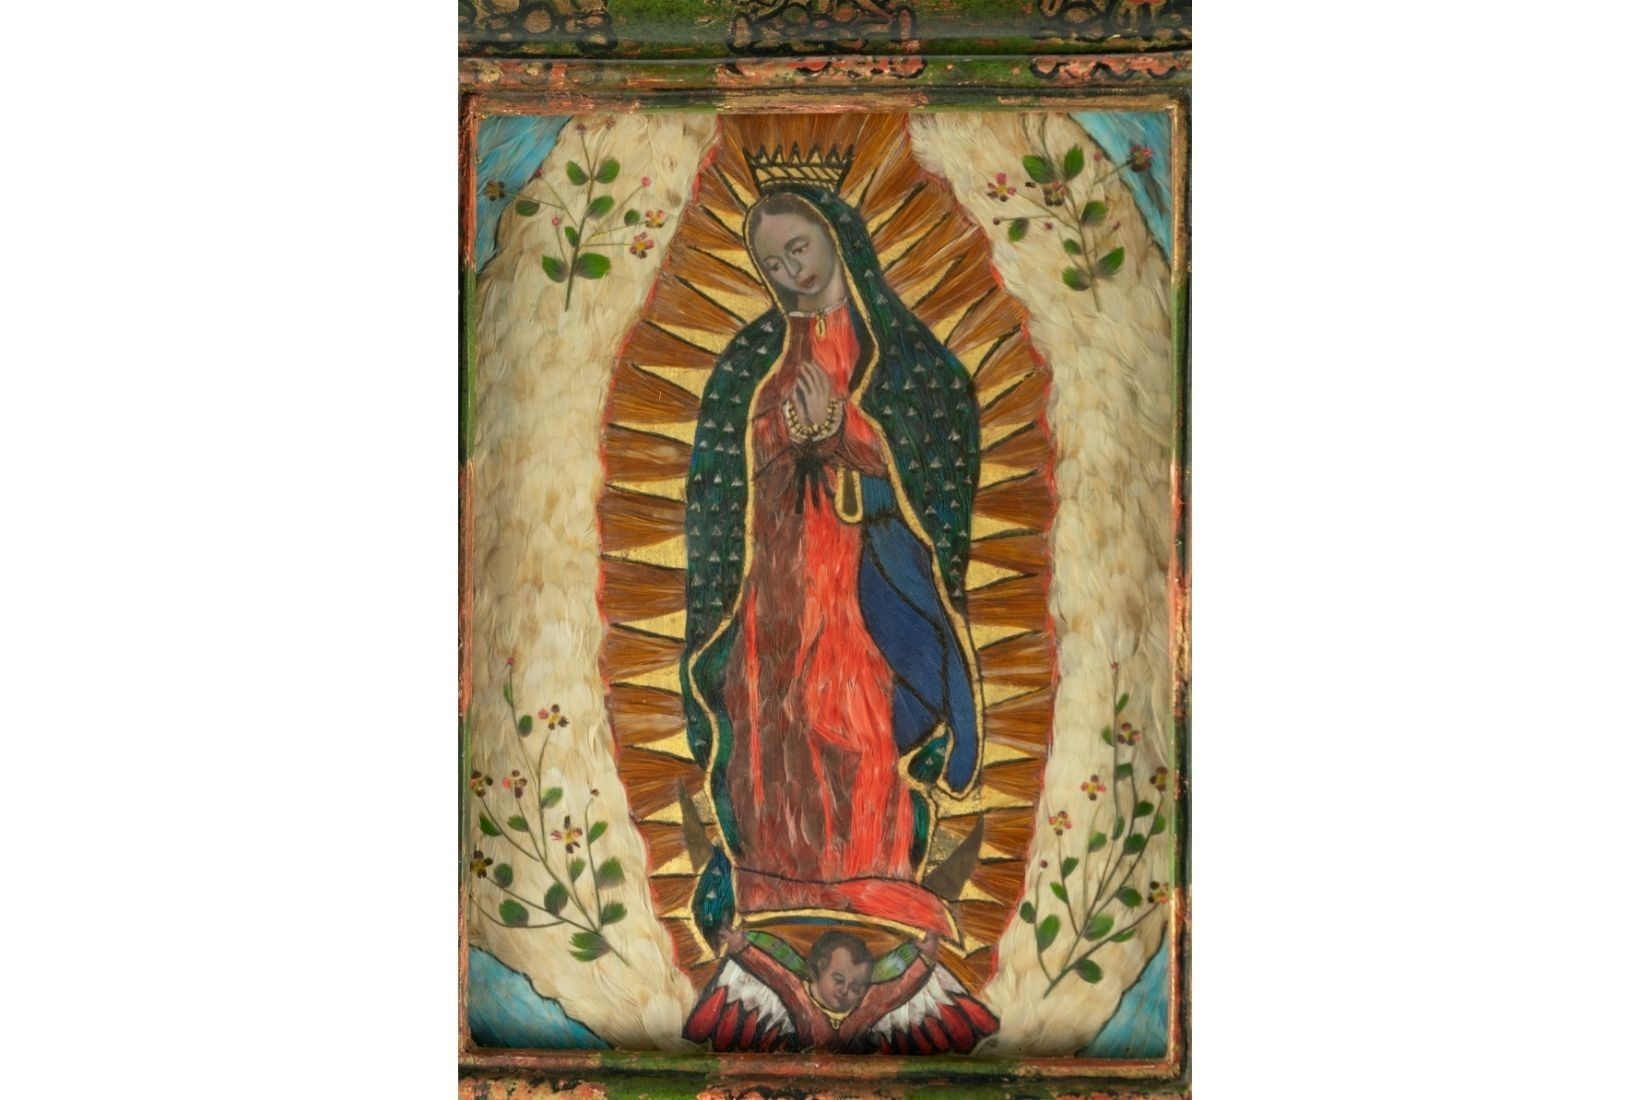 Virgen de Guadalupe en arte plumario. Artesano Francisco García de la Torre. Procedencia desconocida. Col. Marie Thérèse Hermand de Arango. (Foto: EKV).